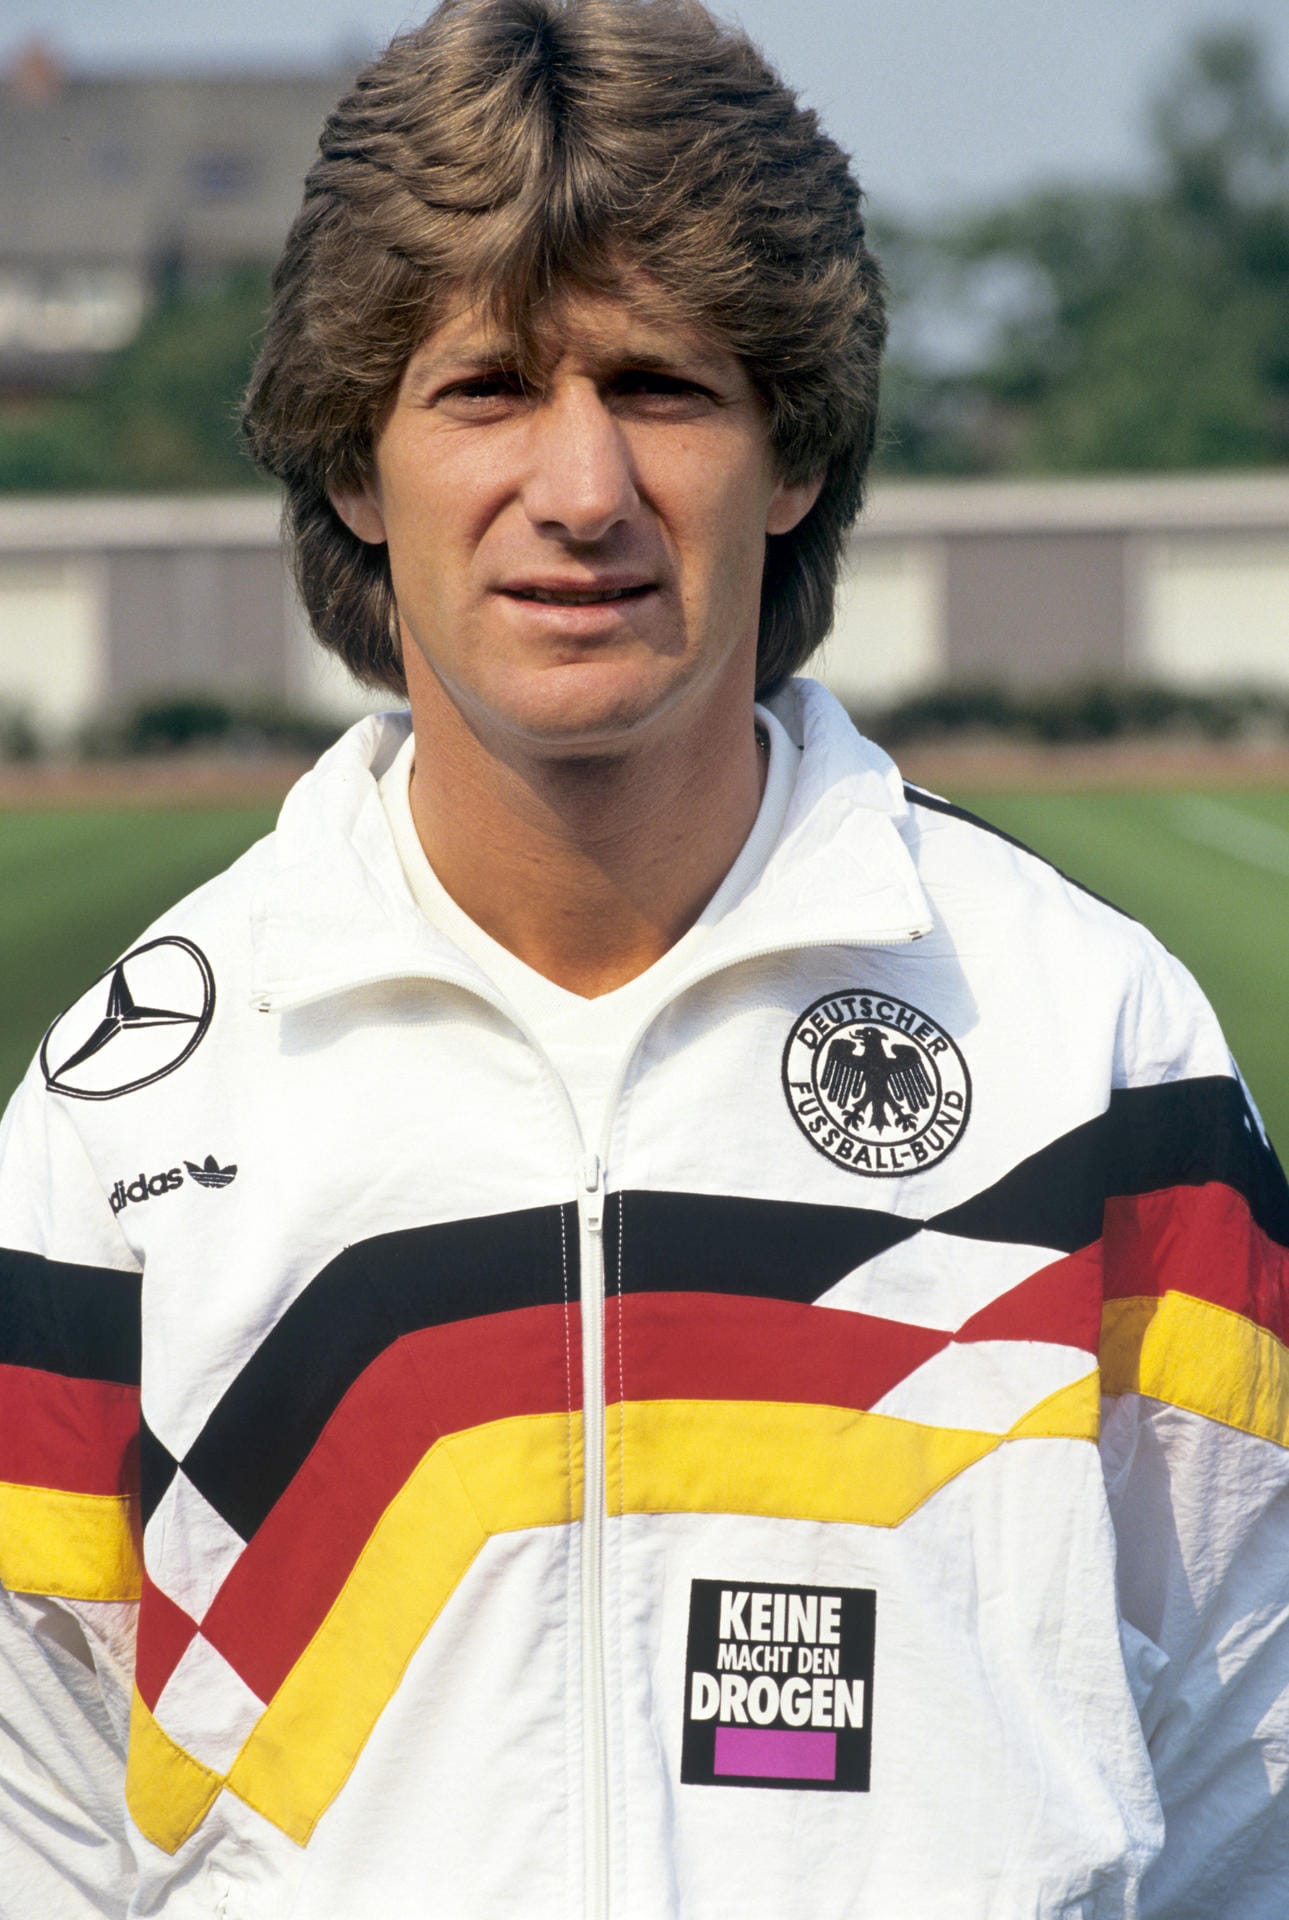 Frank Mill: Versuchte sich in der Saison 1996/97 als Manager bei Fortuna Düsseldorf. Fand danach sein Glück als Leiter einer Fußballschule mit 88 Filialen im ganzen Bundesgebiet. Beschäftigt dort über 60 Ex-Profis.